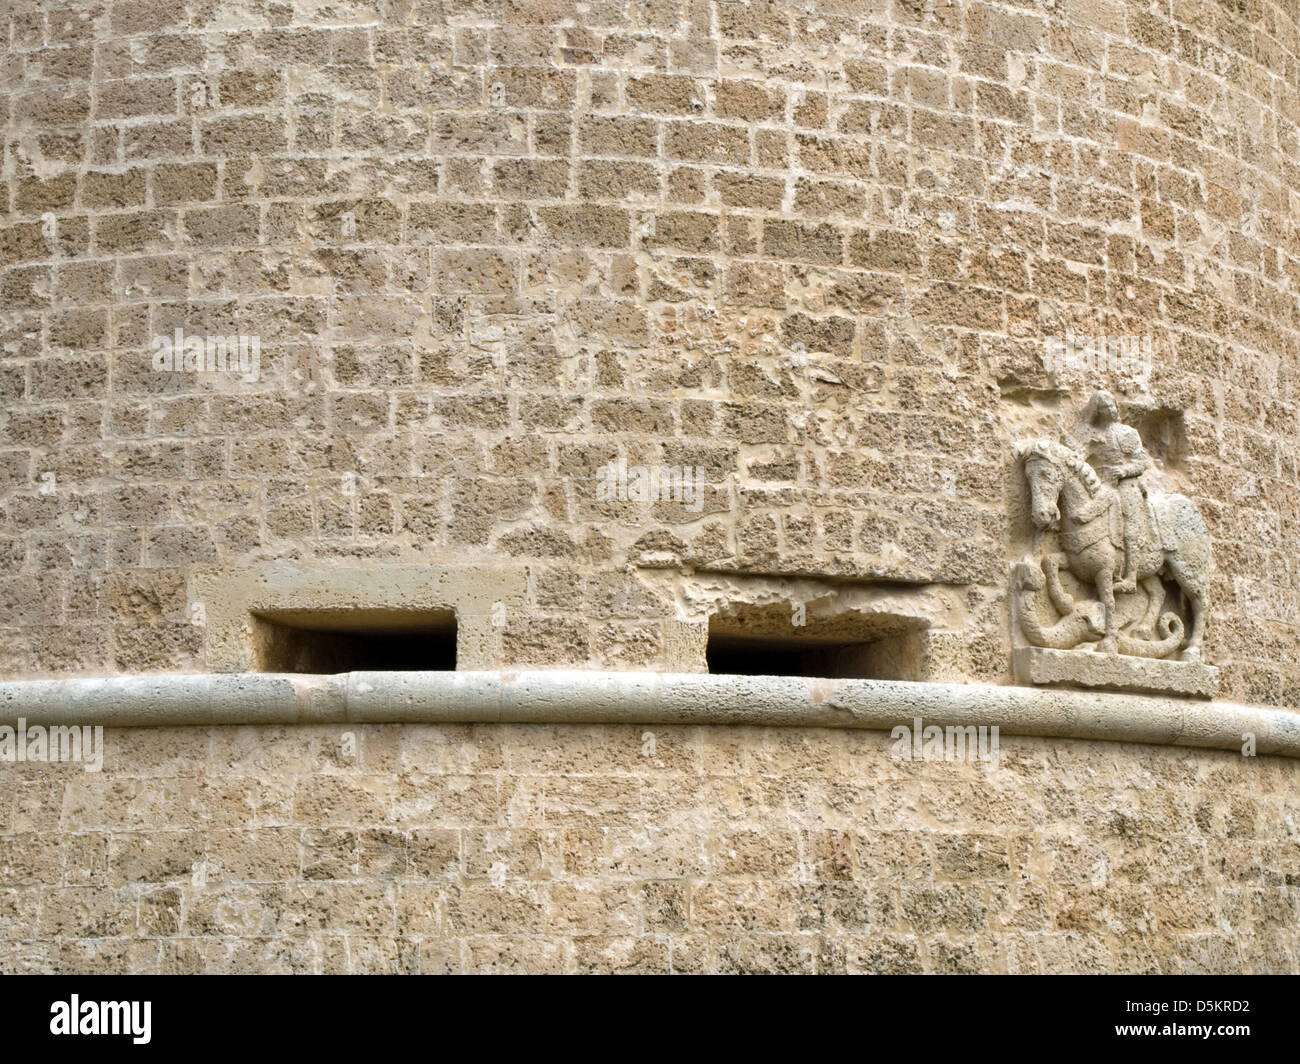 Corigliano d'Otranto  LE - castle - Castello de' Monti - detail Stock Photo